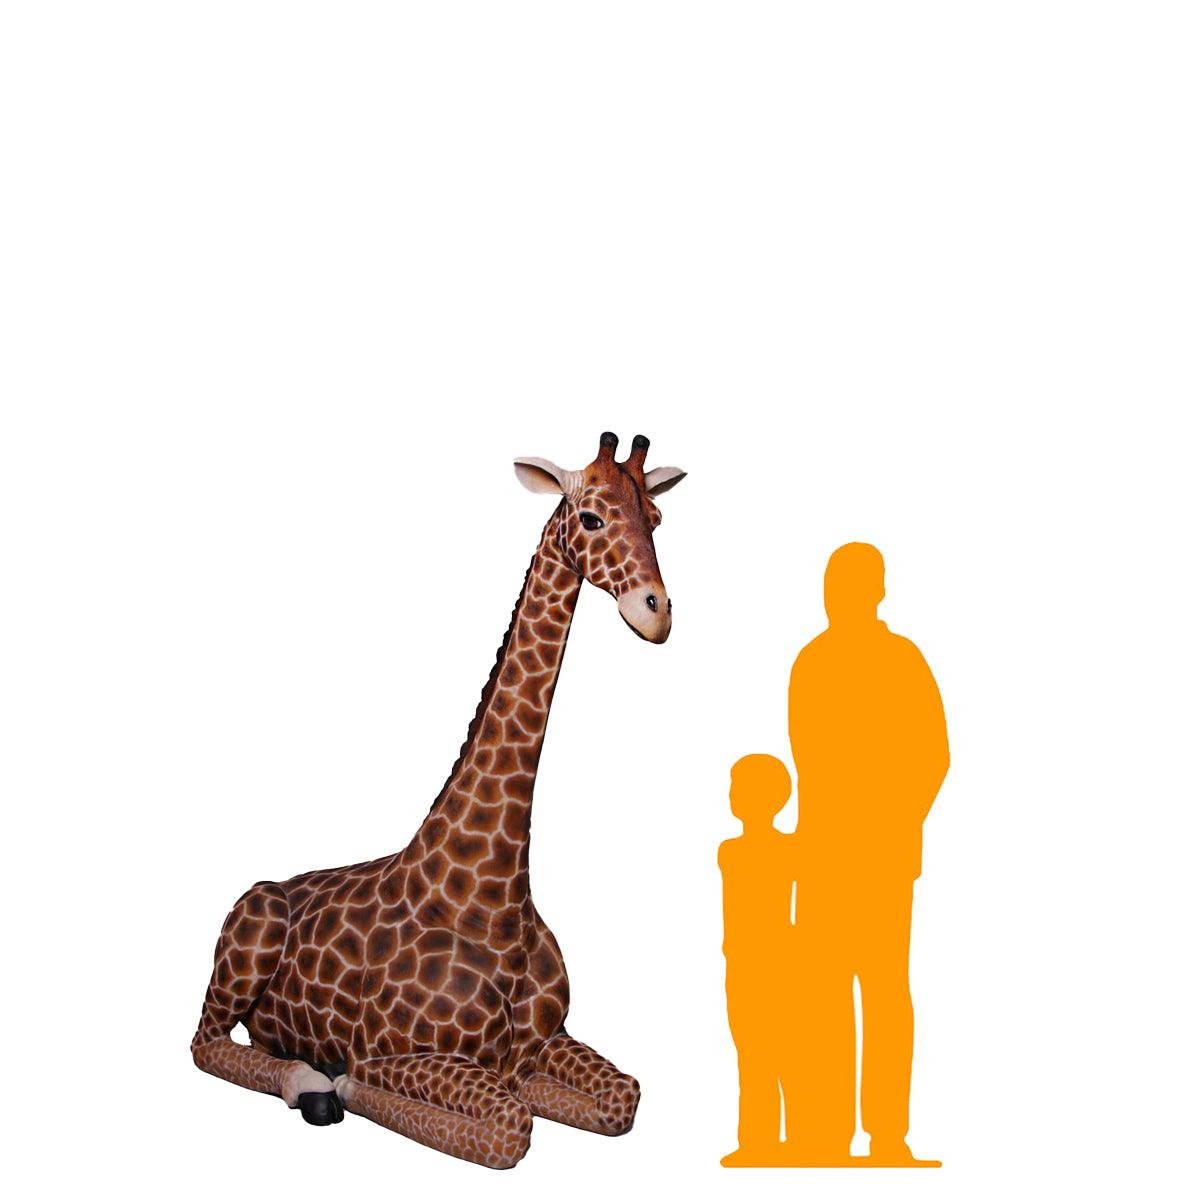 Large Laying Giraffe Statue